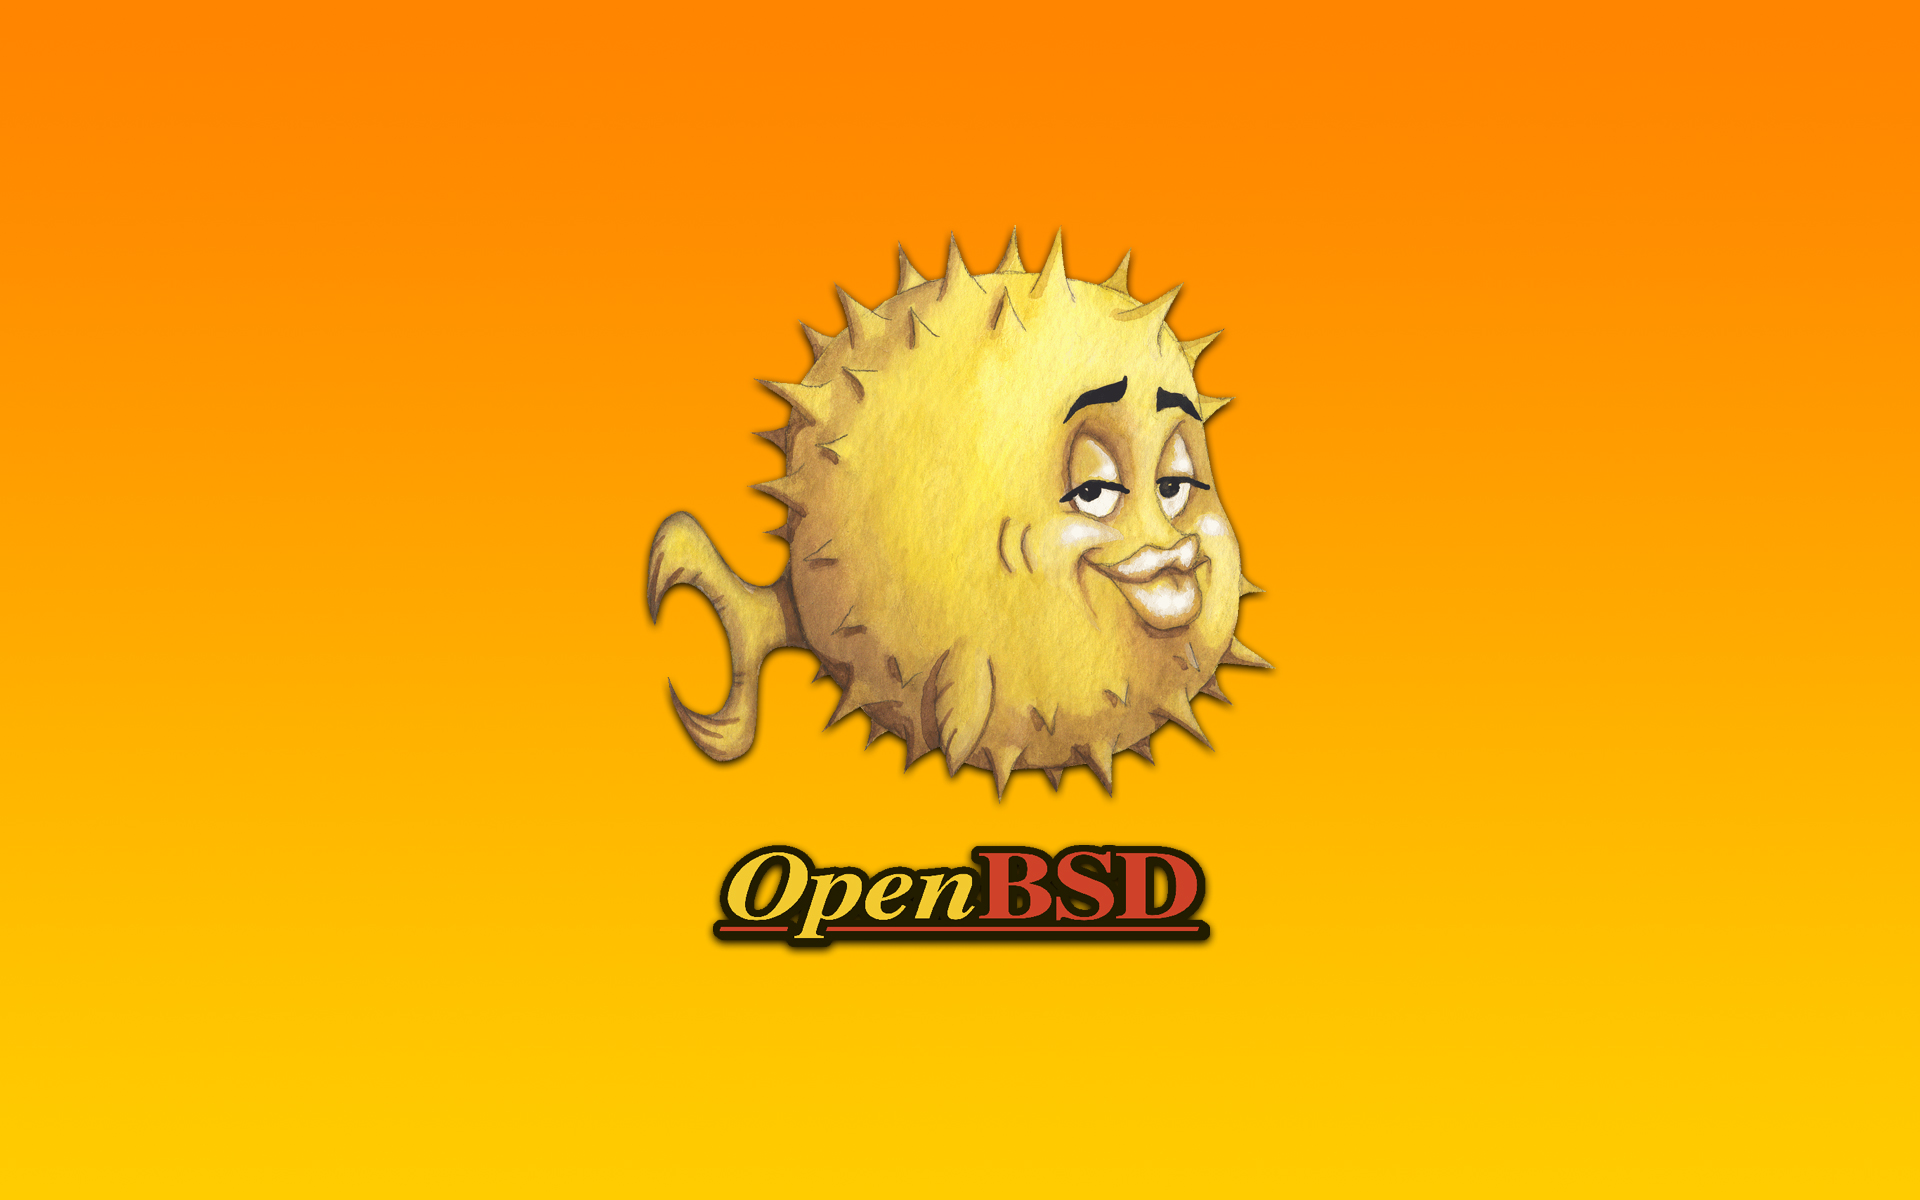 Unix, bsd, OpenBSD - desktop wallpaper